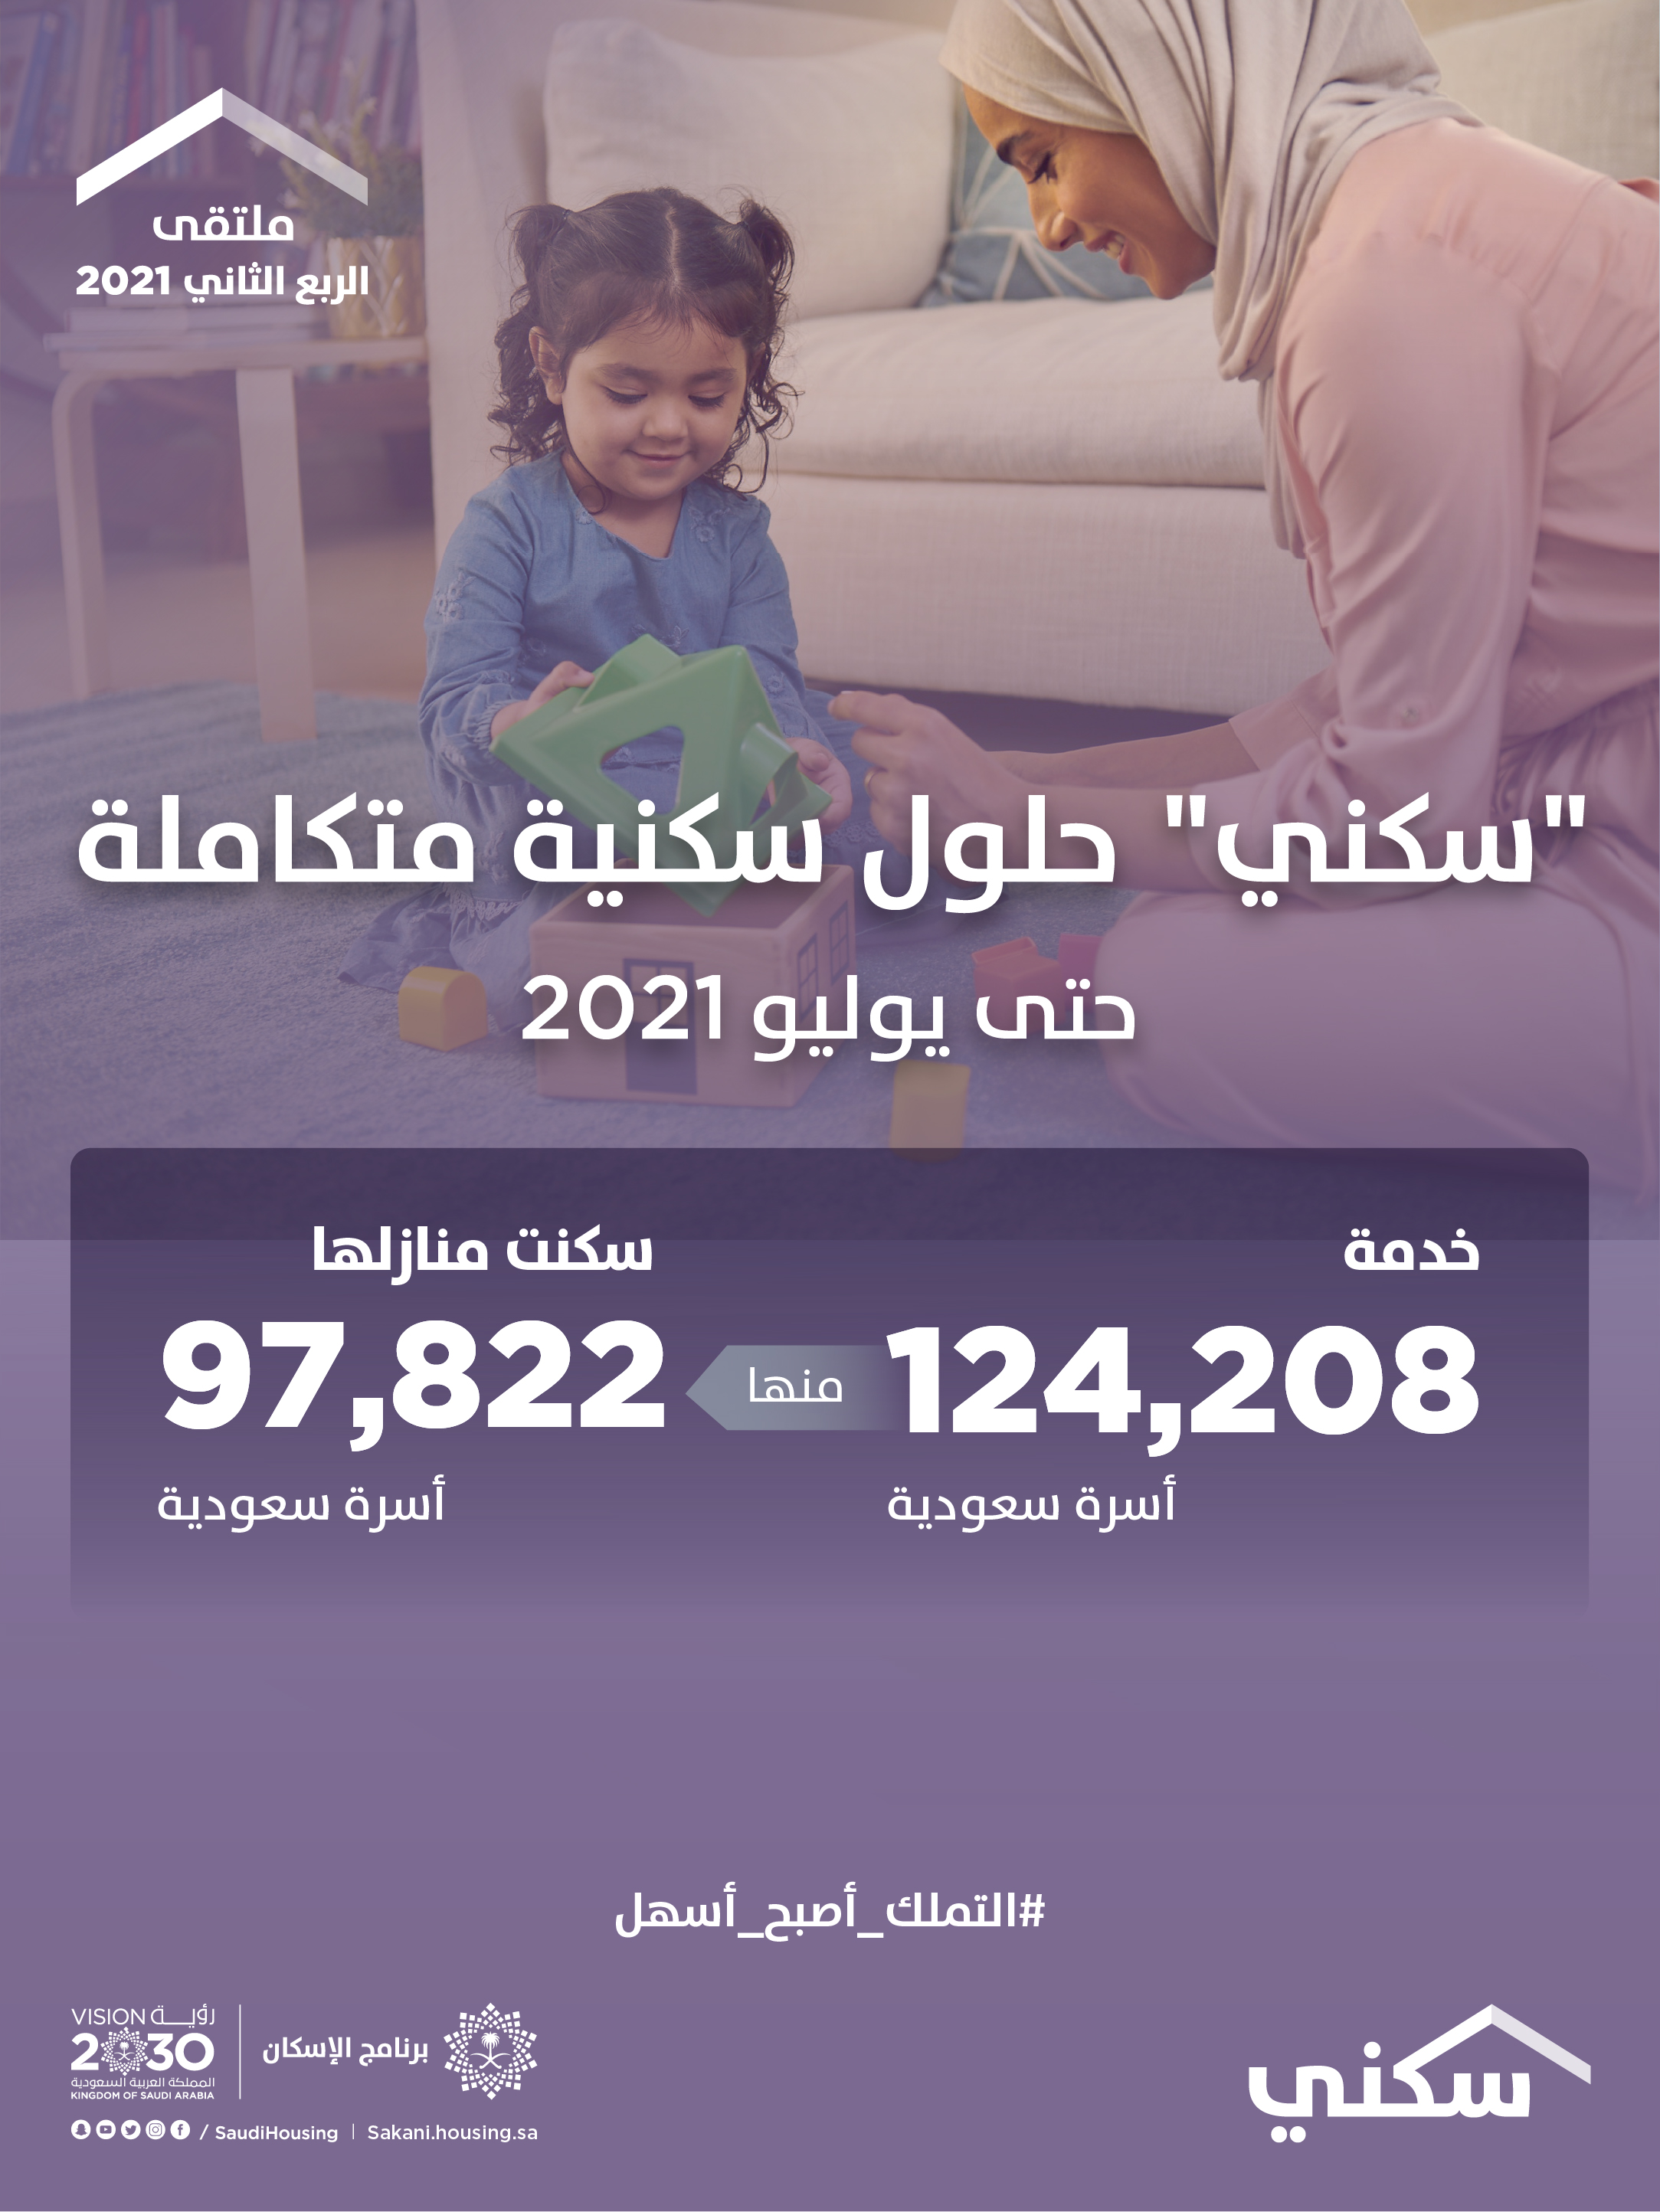 "سكني" يعلن استفادة أكثر من 124 ألف أسرة حتى يوليو 2021 ويدشّن مركزه الشامل في المدينة المنورة